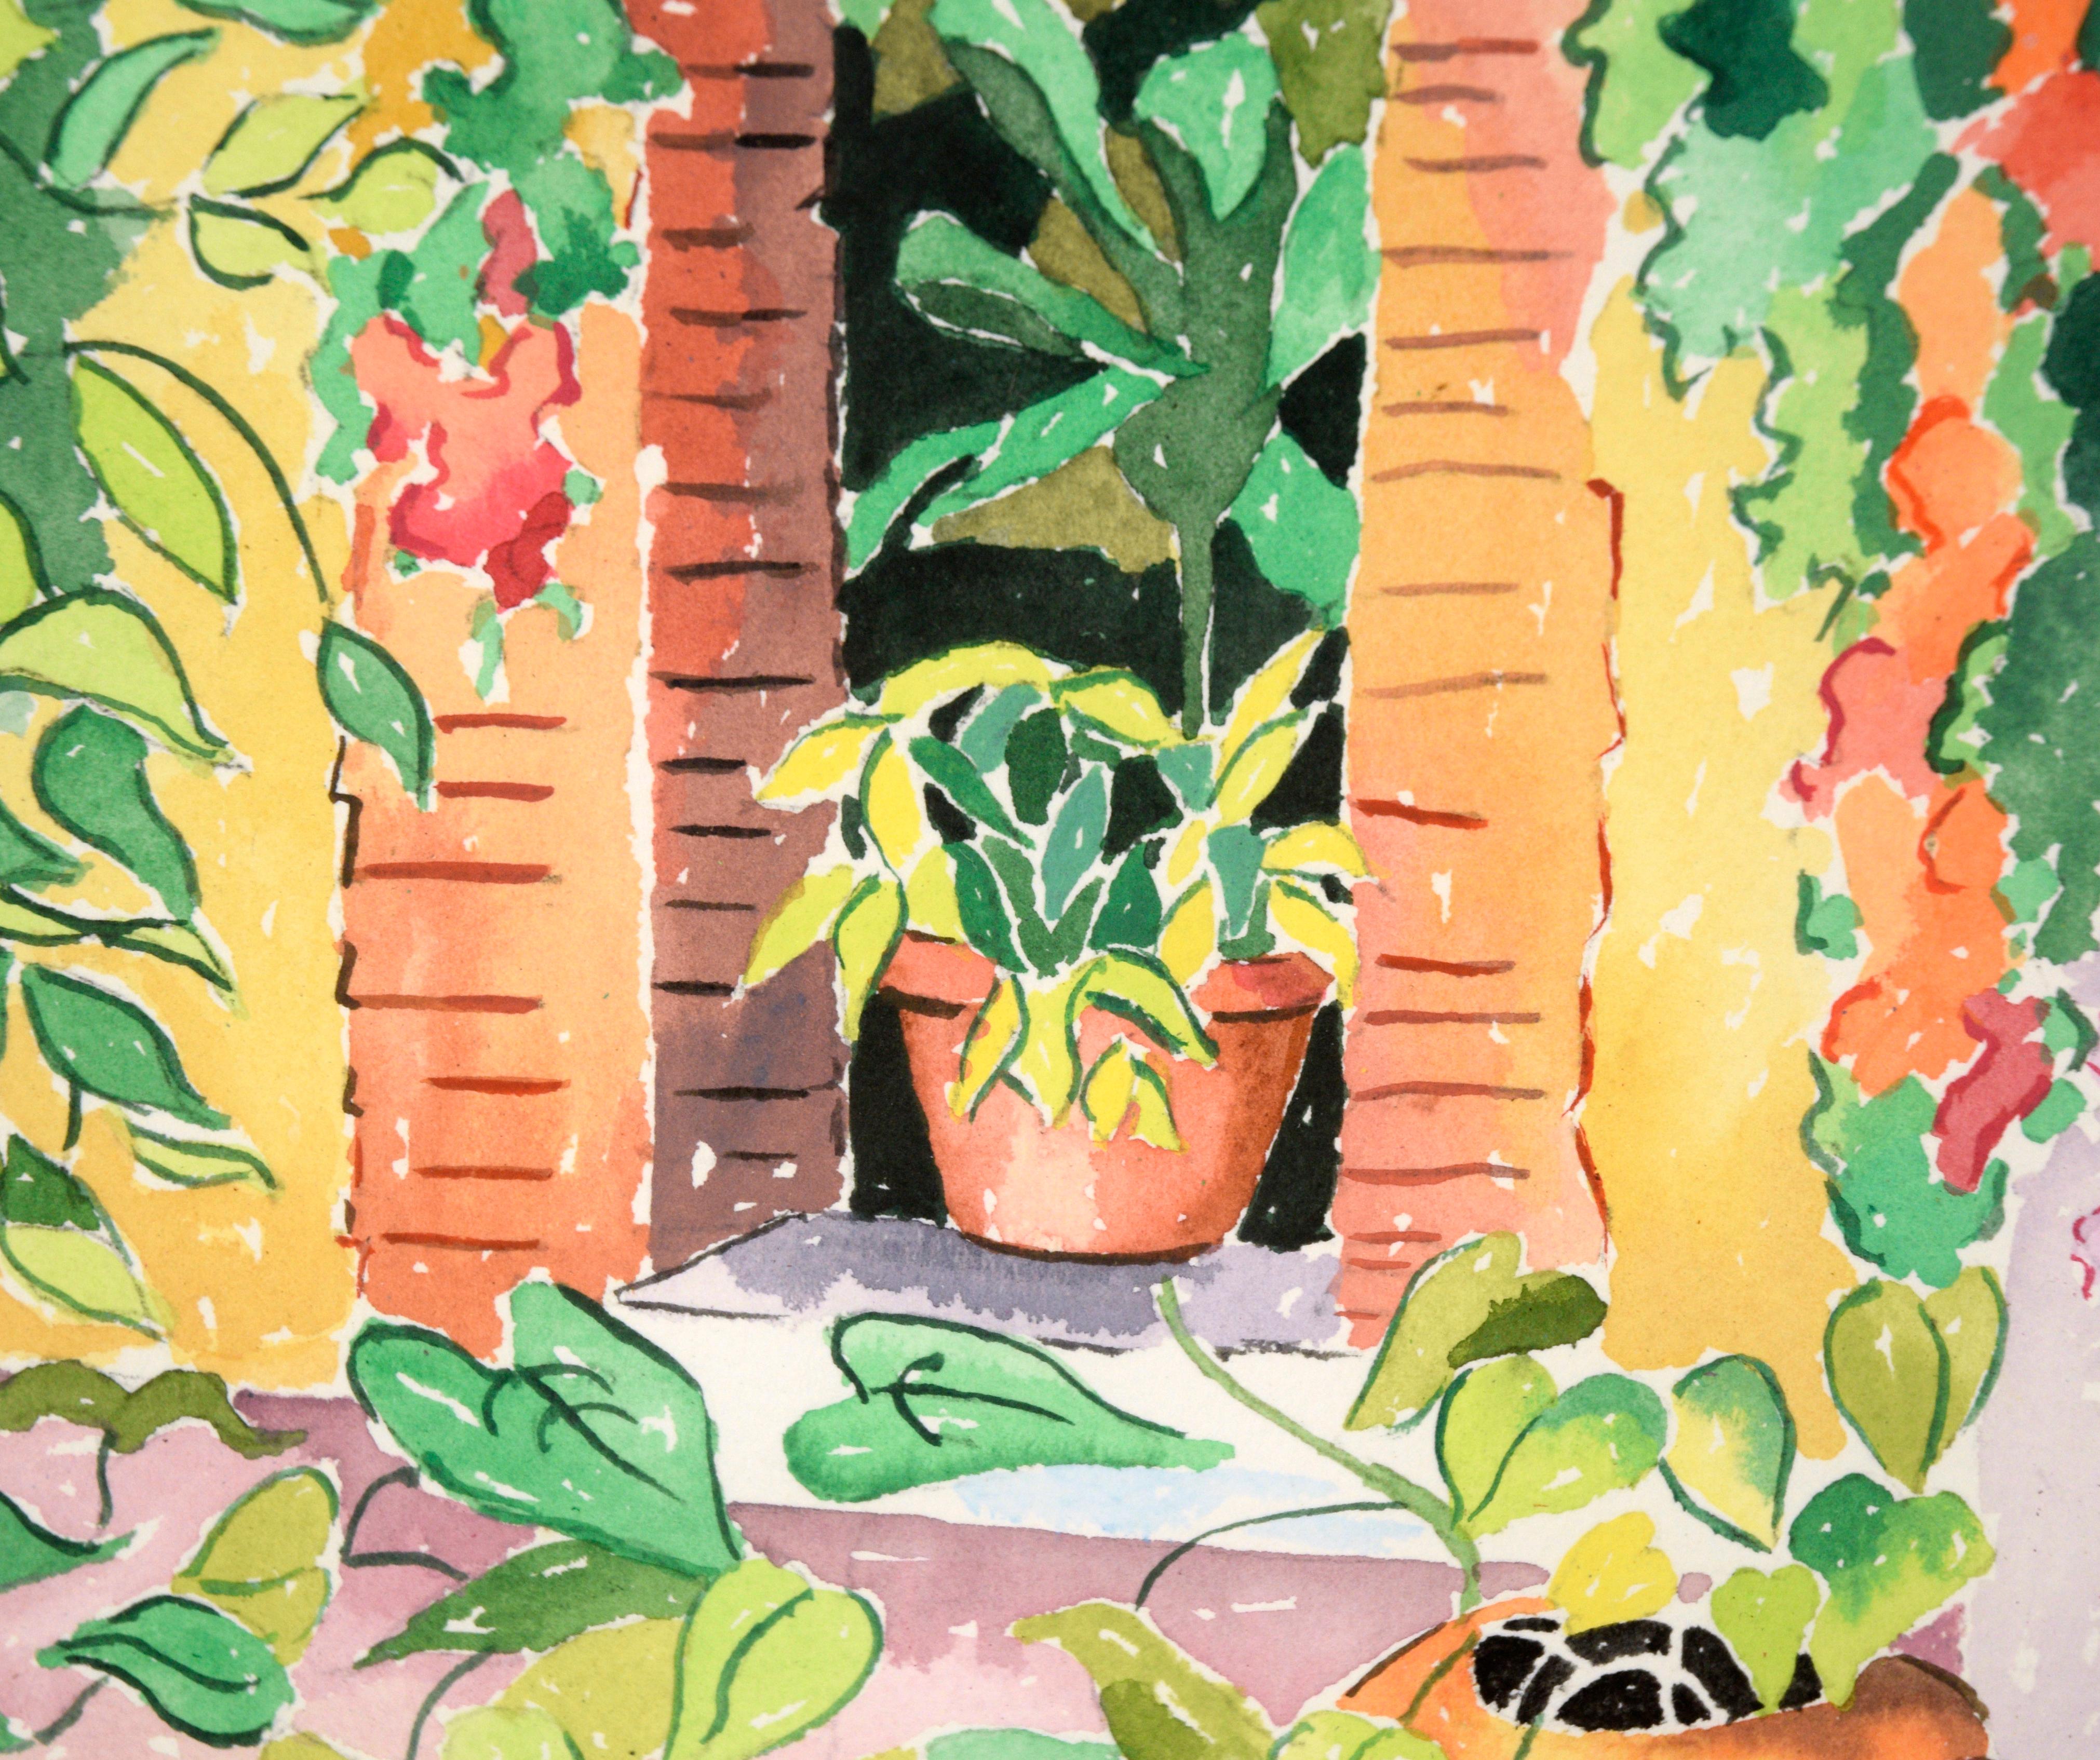 Leuchtende Blumenlandschaft von Jean Harney (Amerikaner, 20. Jahrhundert). Ein Innenhof ist voller blühender Pflanzen und Blumen. Eine üppige Ranke mit Blüten in Rosa- und Orangetönen klettert über einen Torbogen. In der Nähe befinden sich mehrere